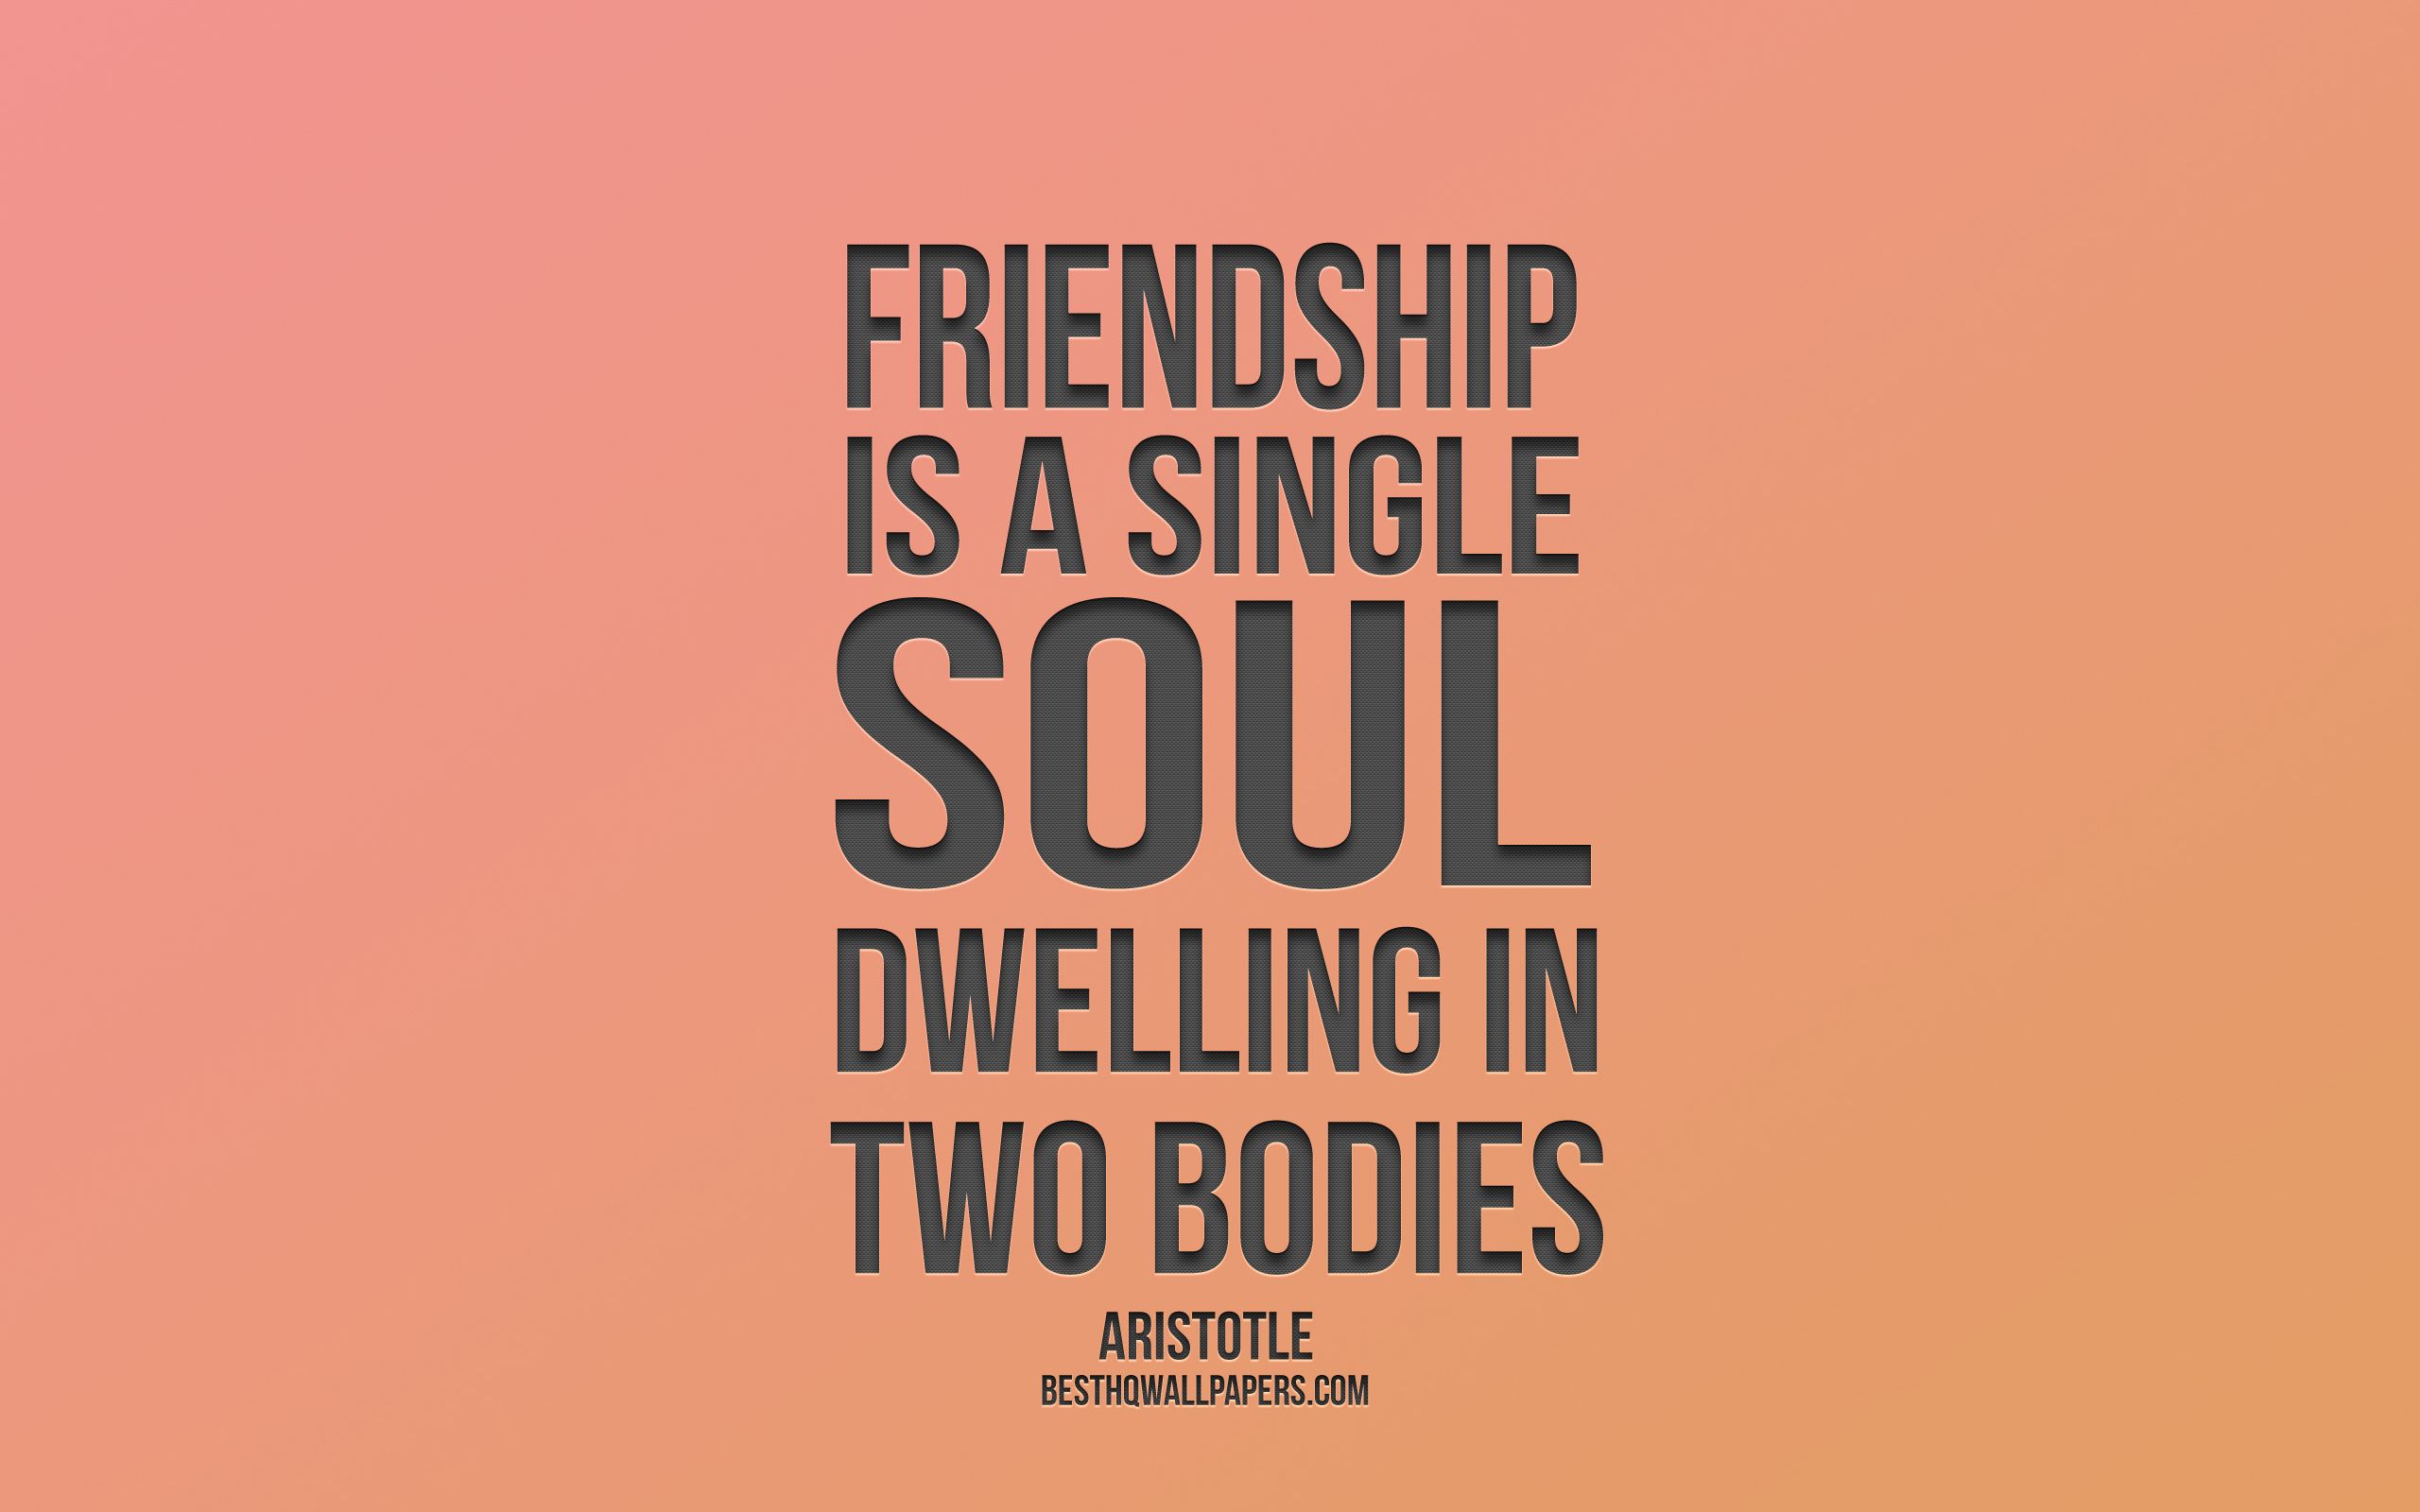 Download wallpaper Friendship is a single soul dwelling in two